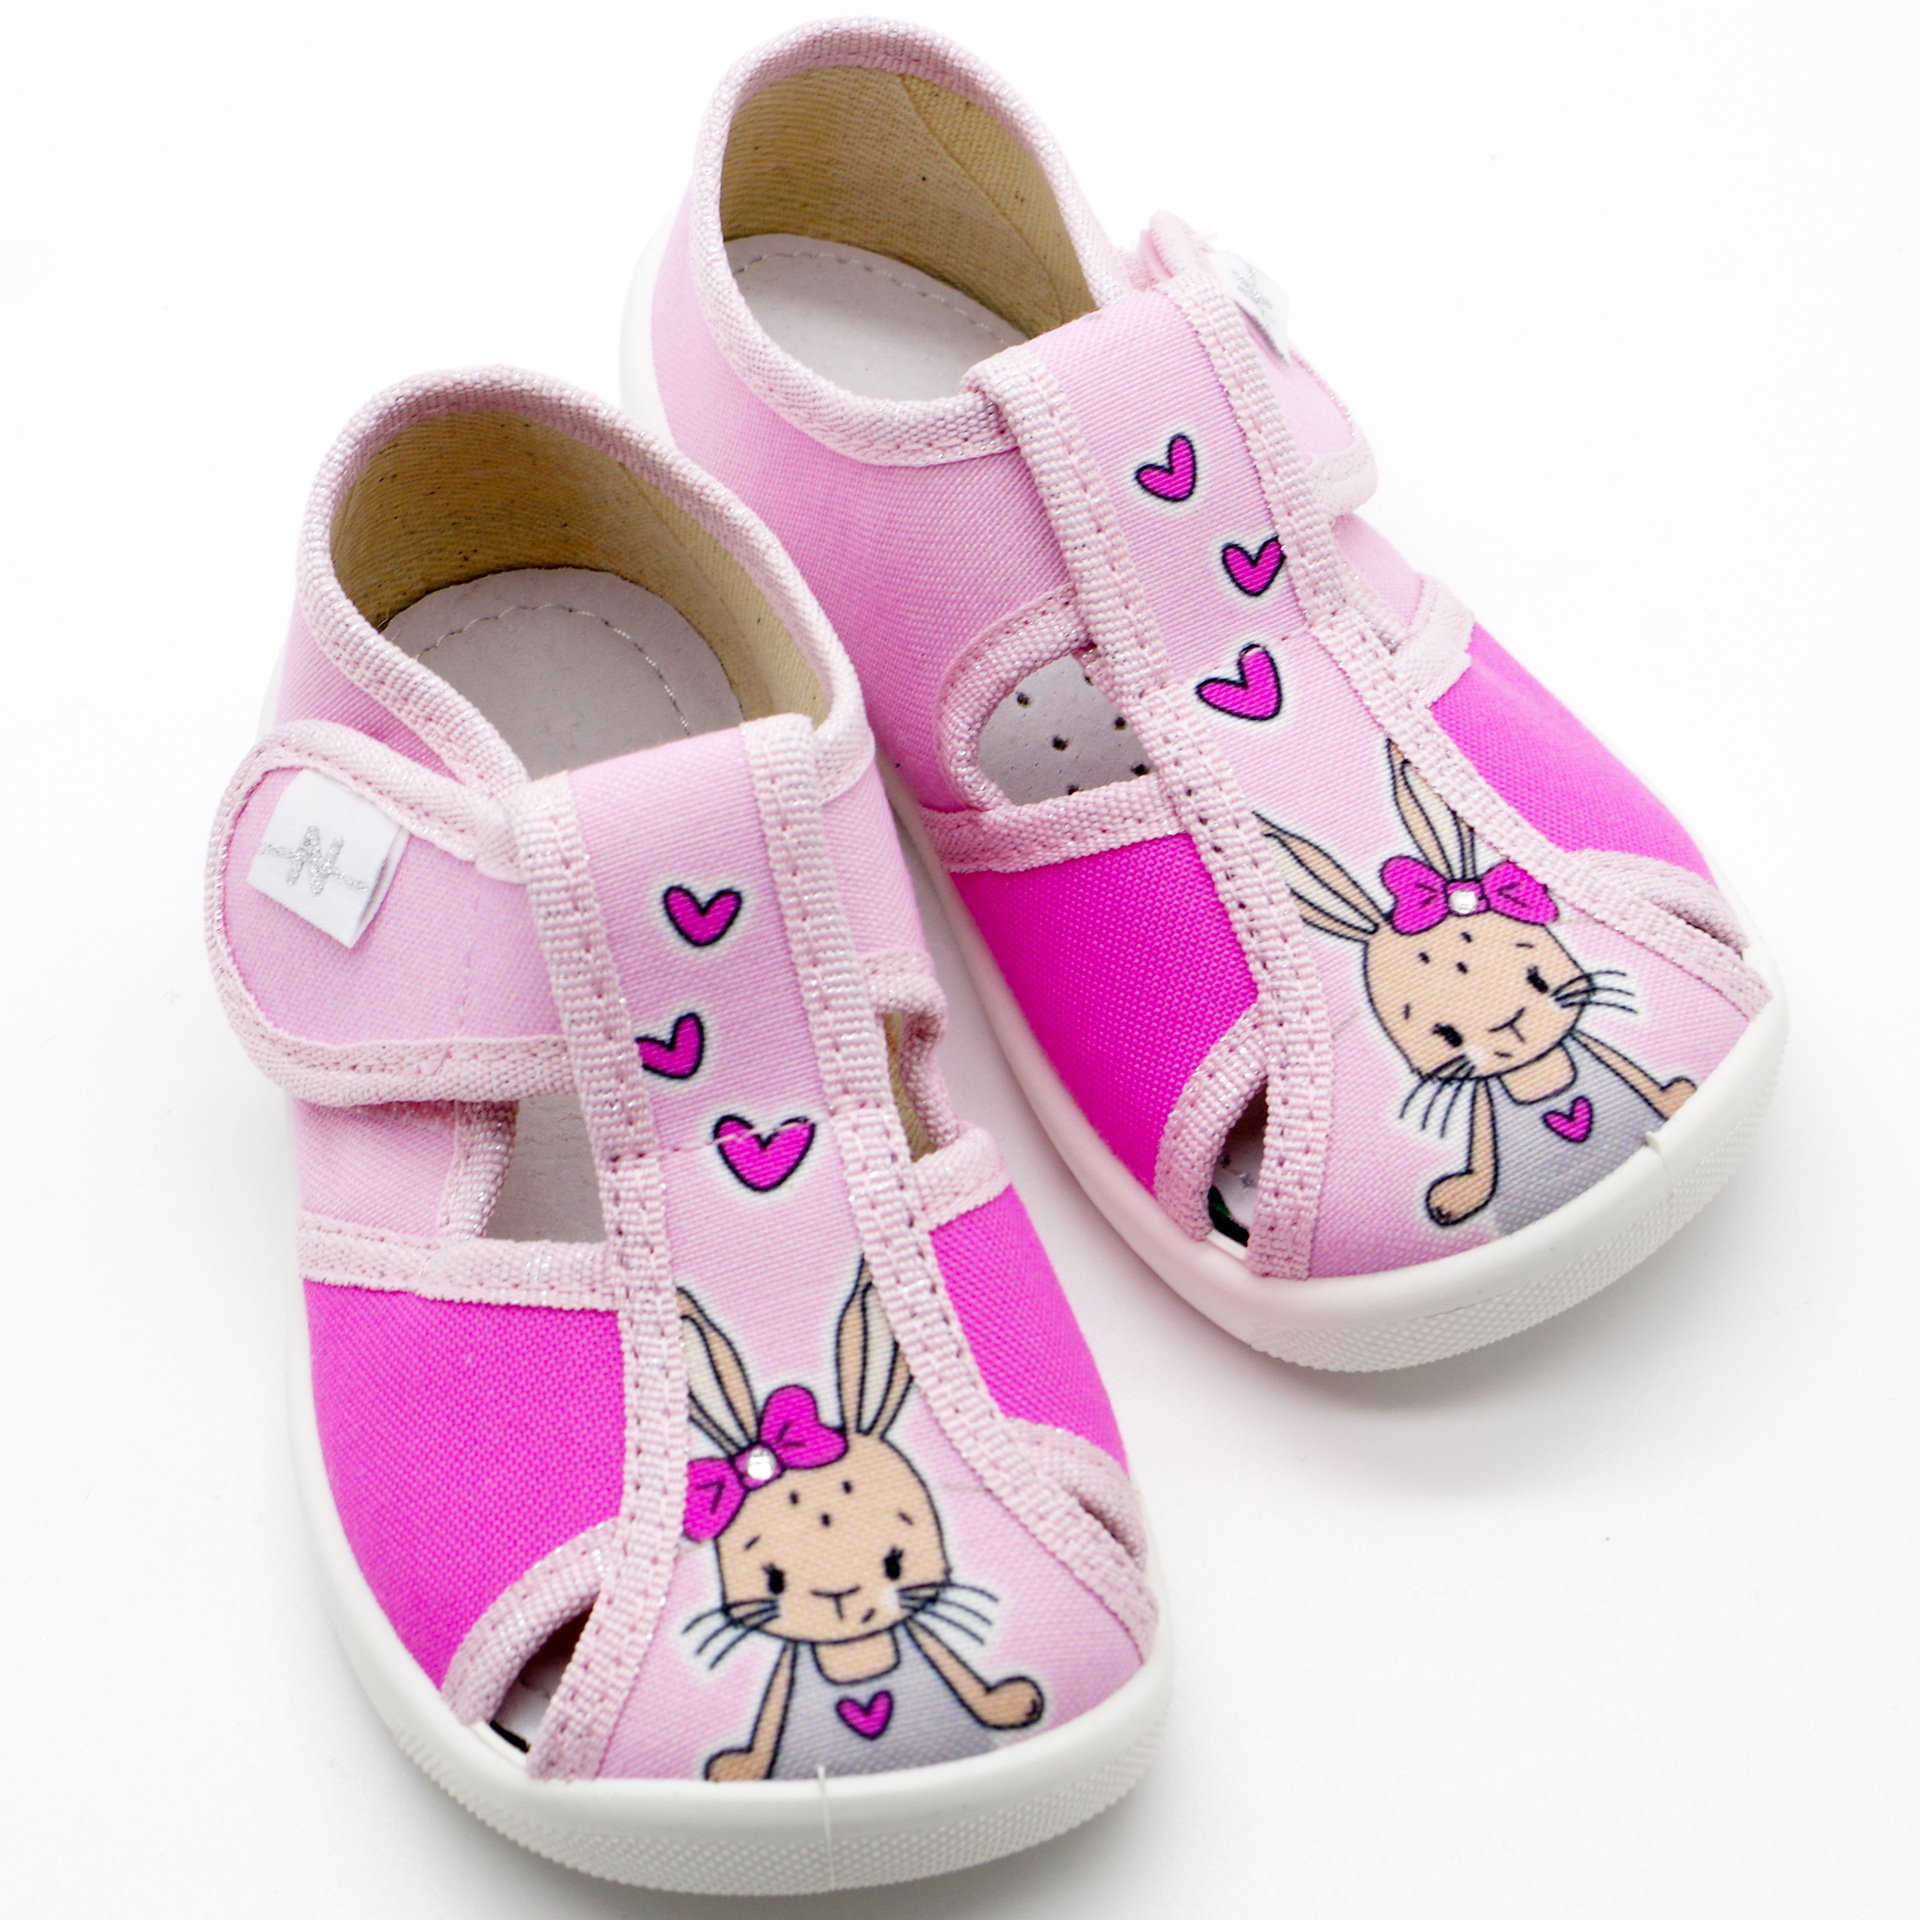 Текстильная обувь для девочек Тапочки Merlin (2205) цвет Розовый 18-25 размеры – Sole Kids. Фото 4